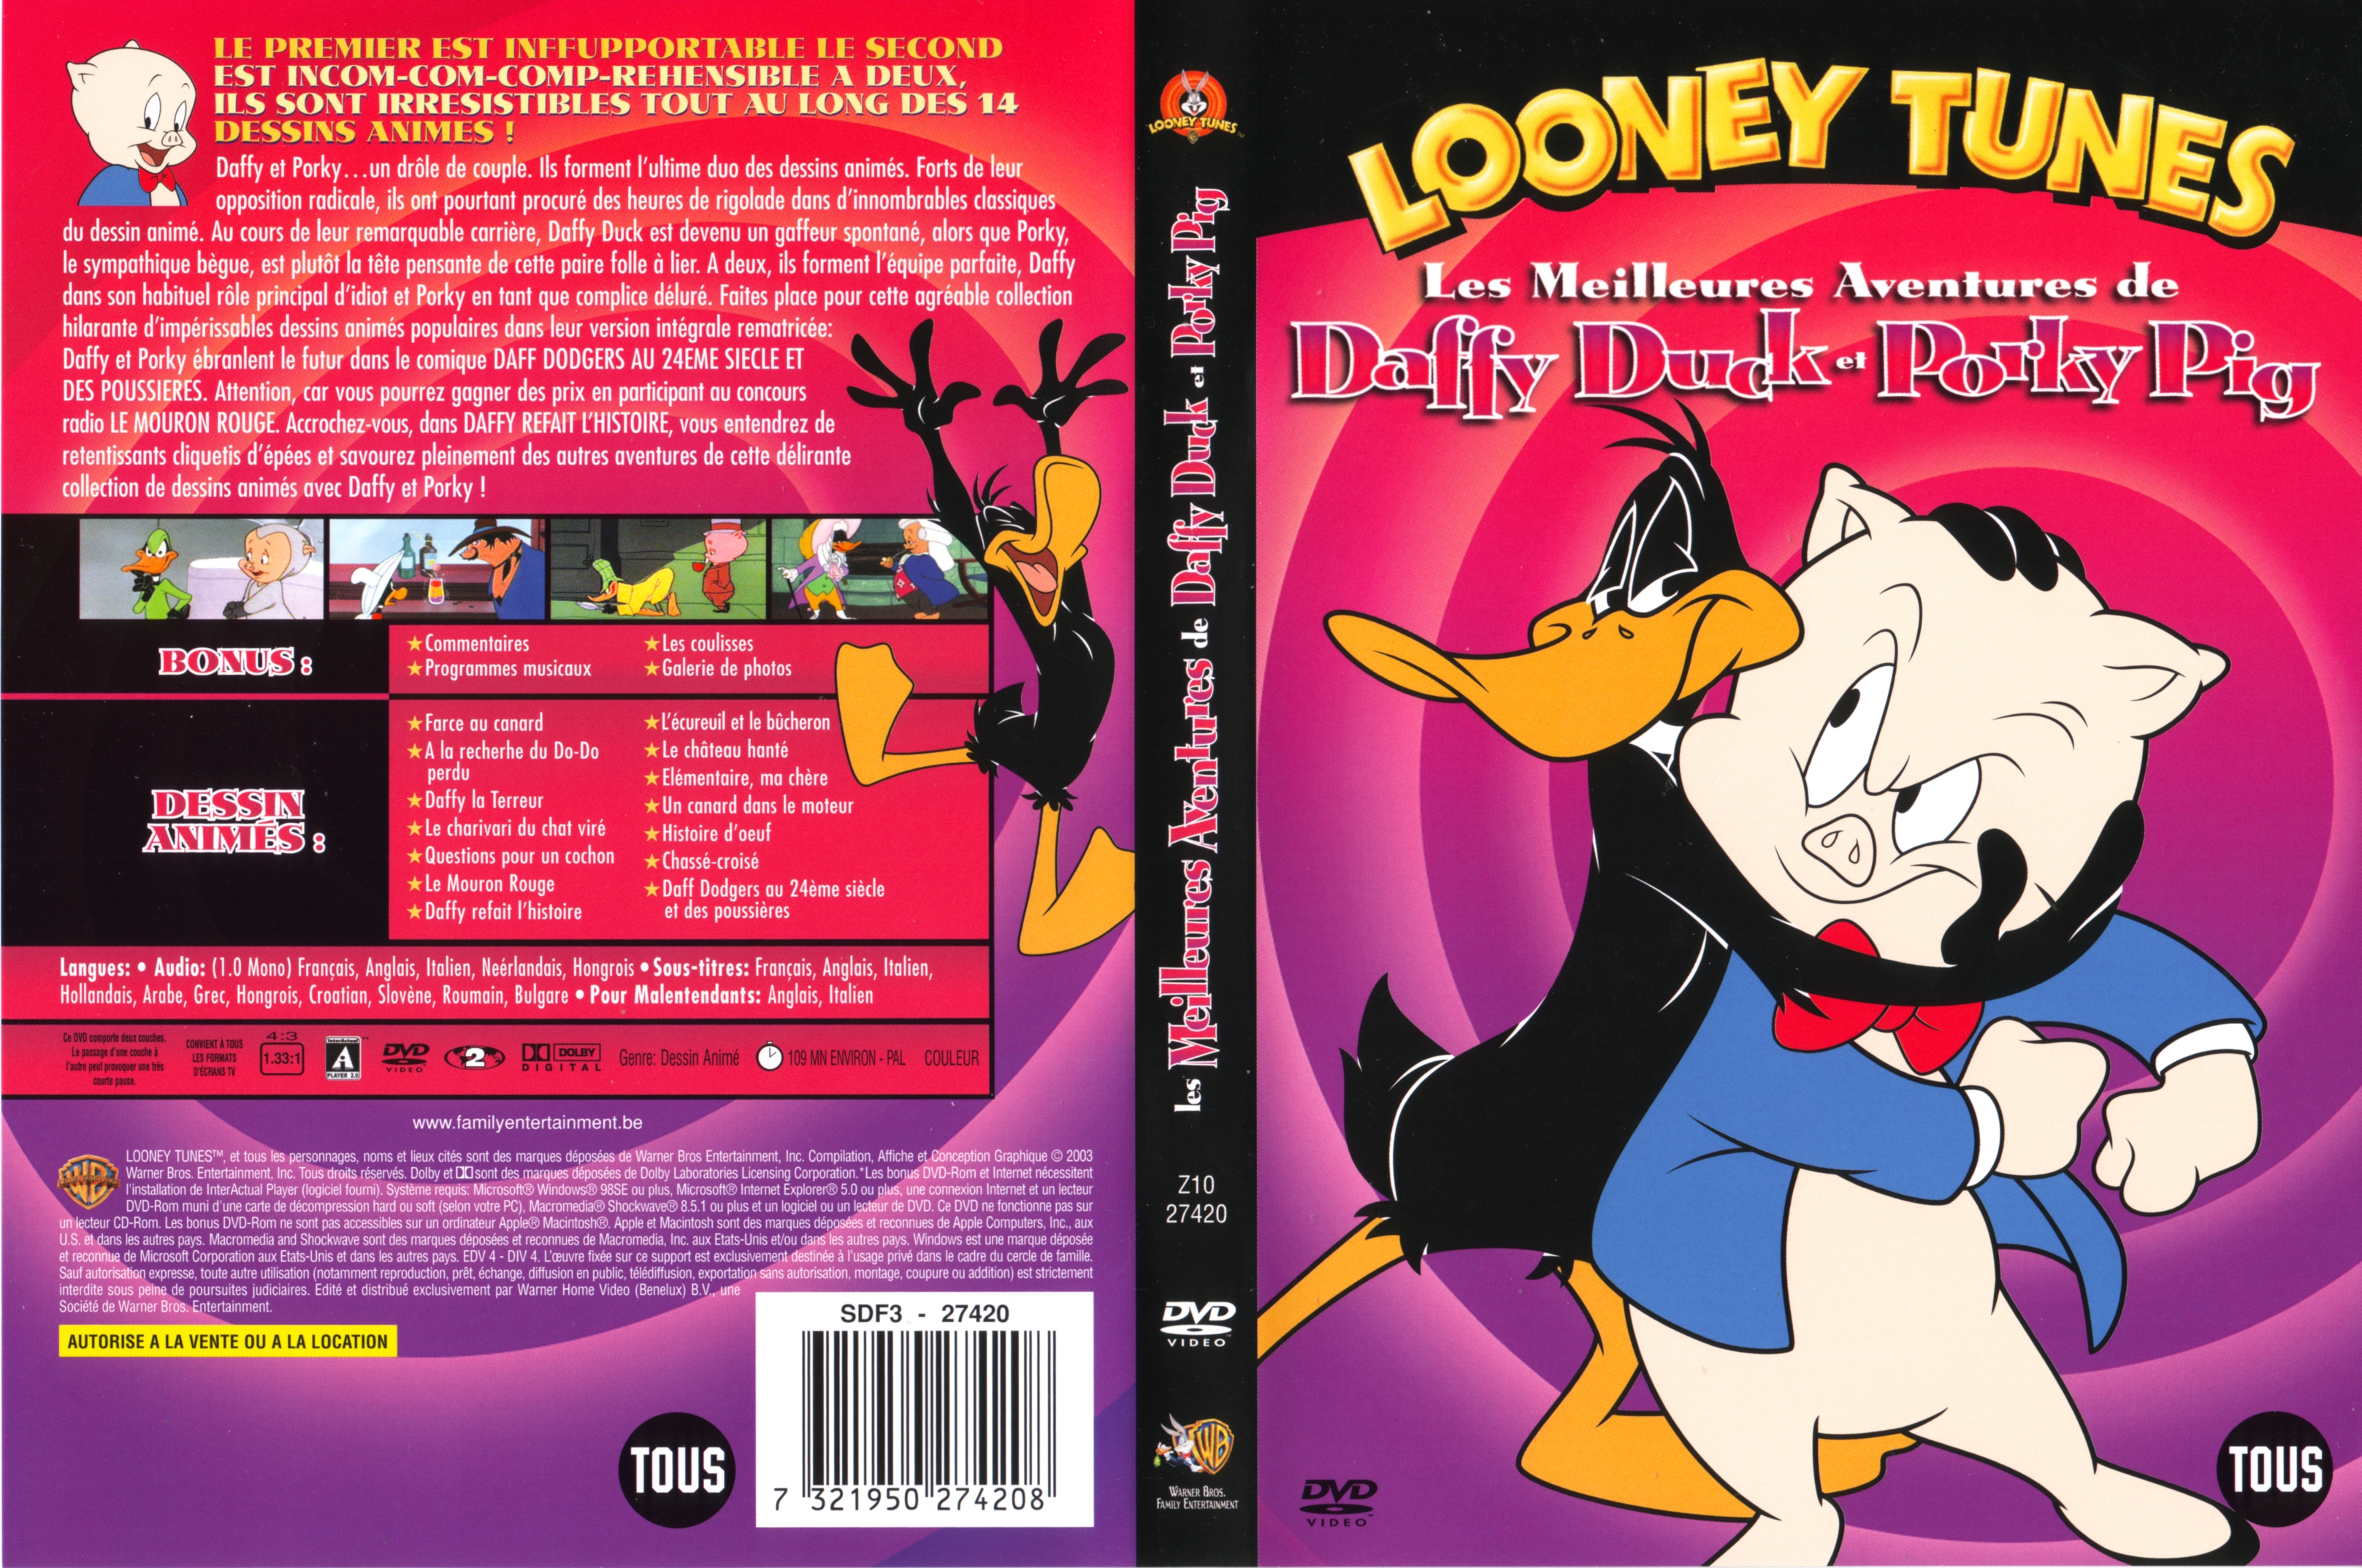 Jaquette DVD Looney Tunes - Les meilleures aventures de daffy Duck et Porky Pig